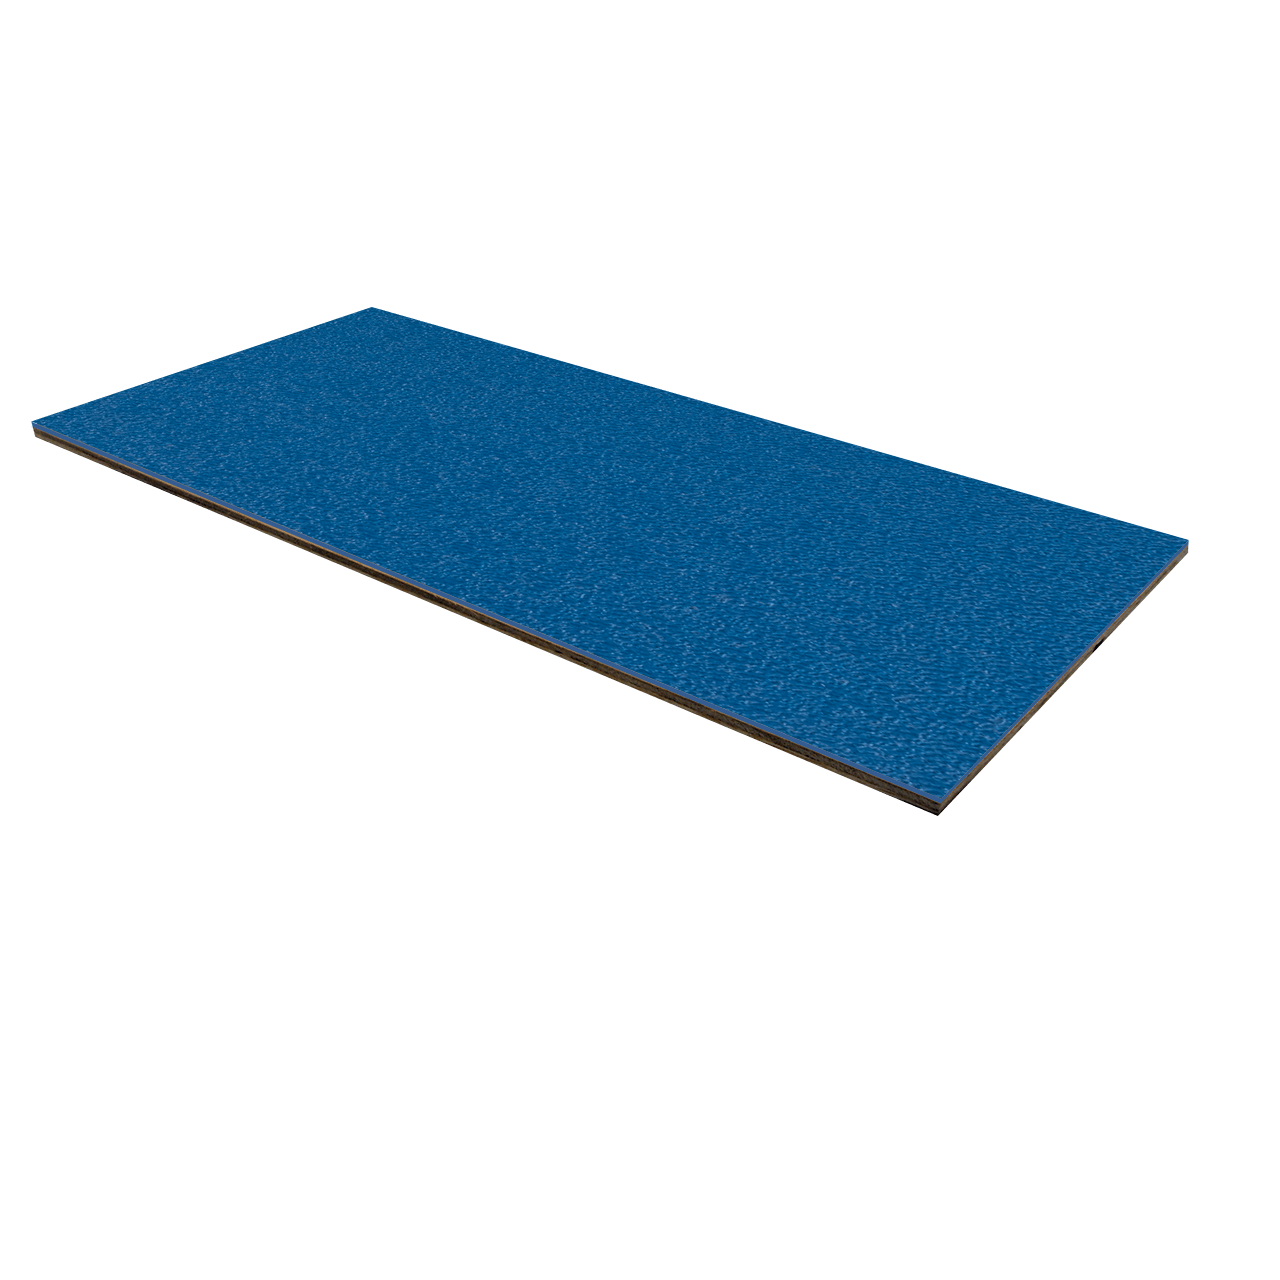 1/8" Luan Plywood ABS Laminate - Medium Blue